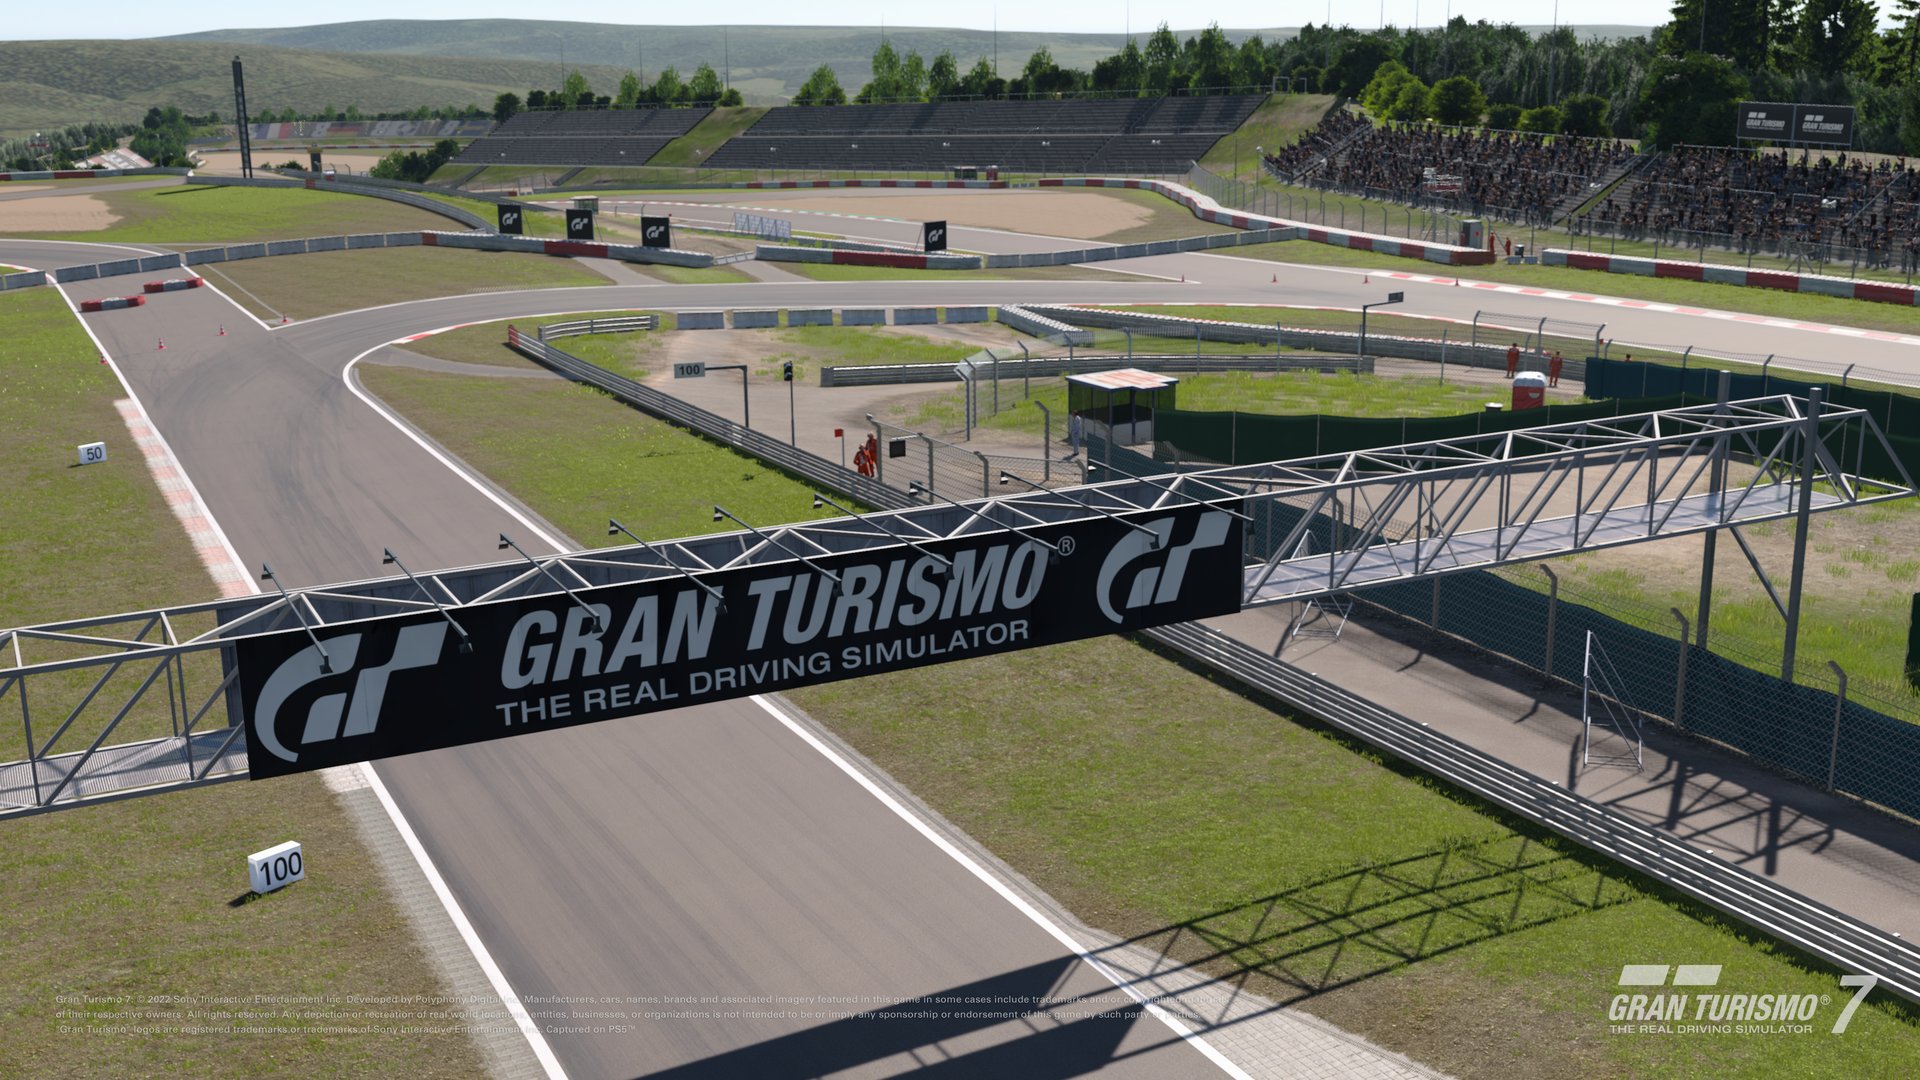 A atualização 1.31 de Gran Turismo chega amanhã com cinco carros novos,  incluindo 2 traçados novos para Nurburgring e um local novo no Scapes –  PlayStation.Blog BR